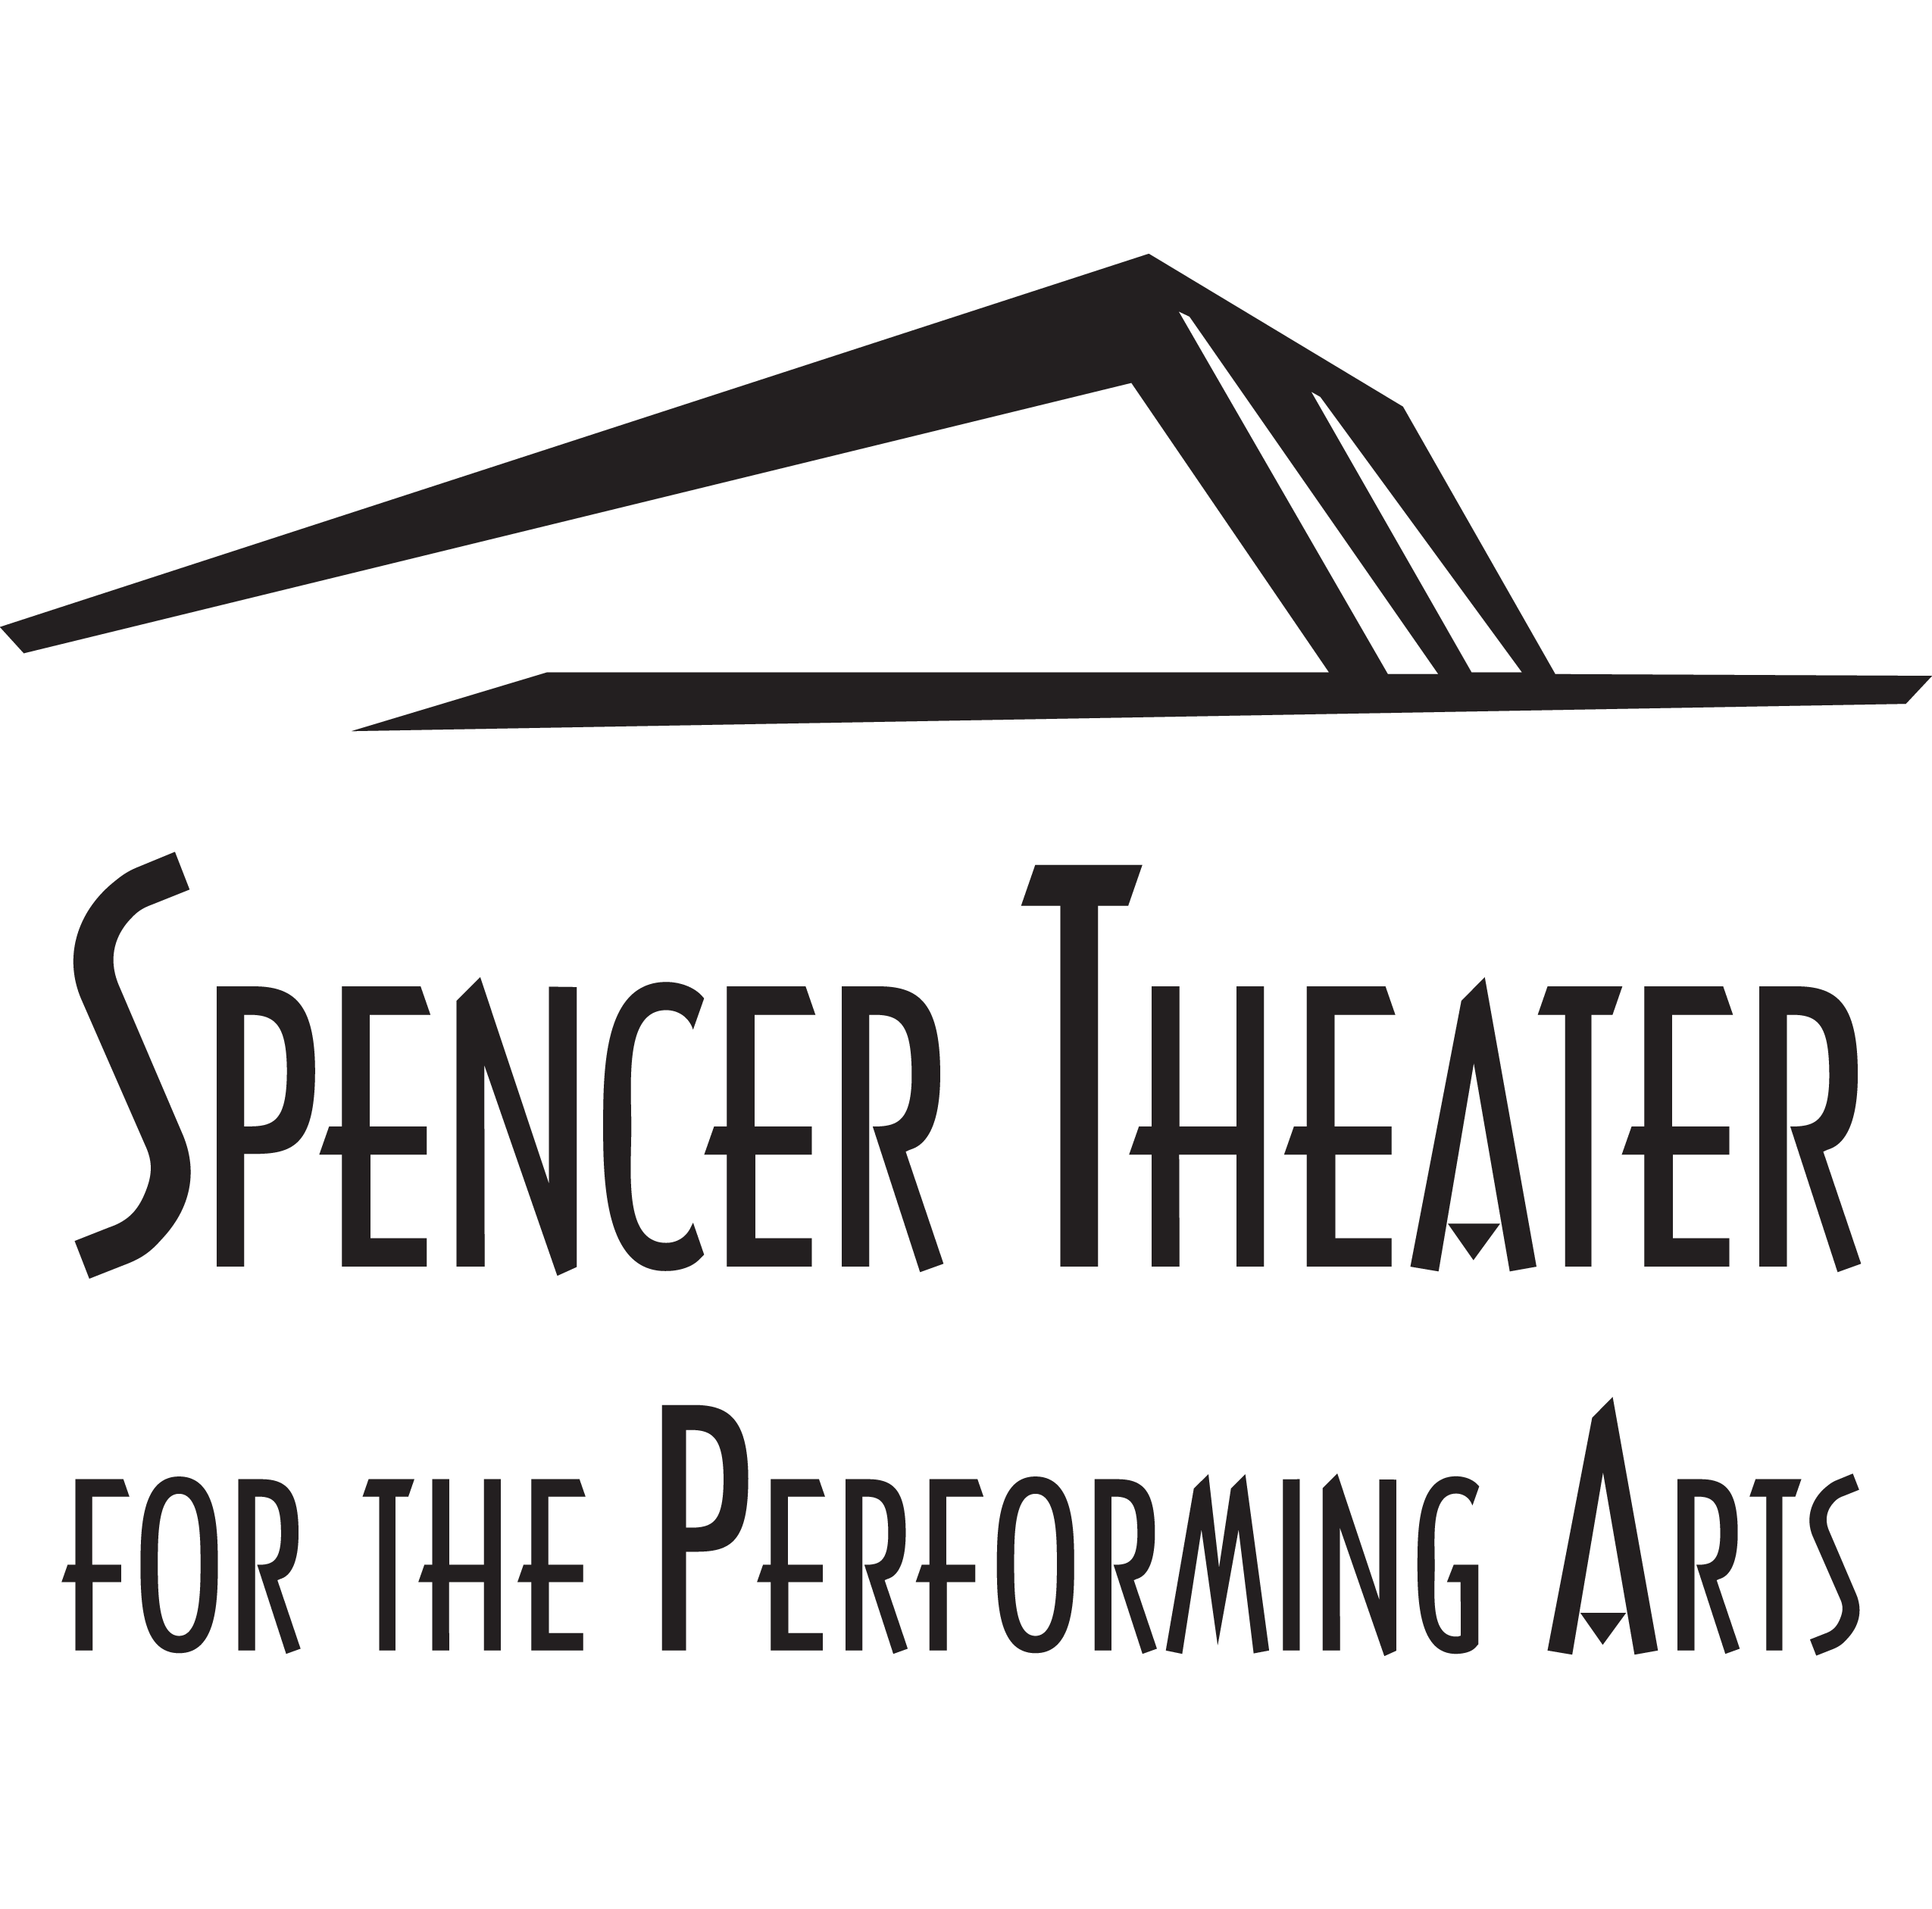 Spencer Theater logo